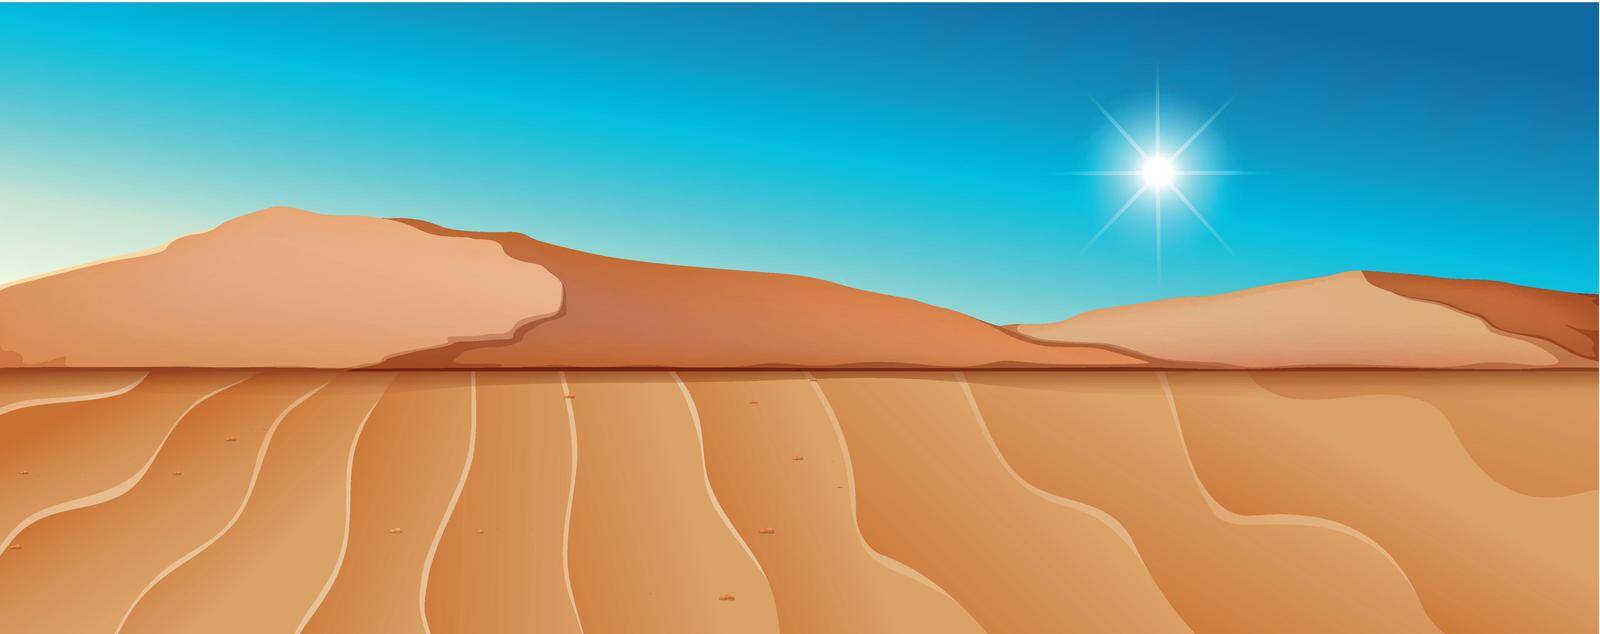 Dry desert landscape scene illustration